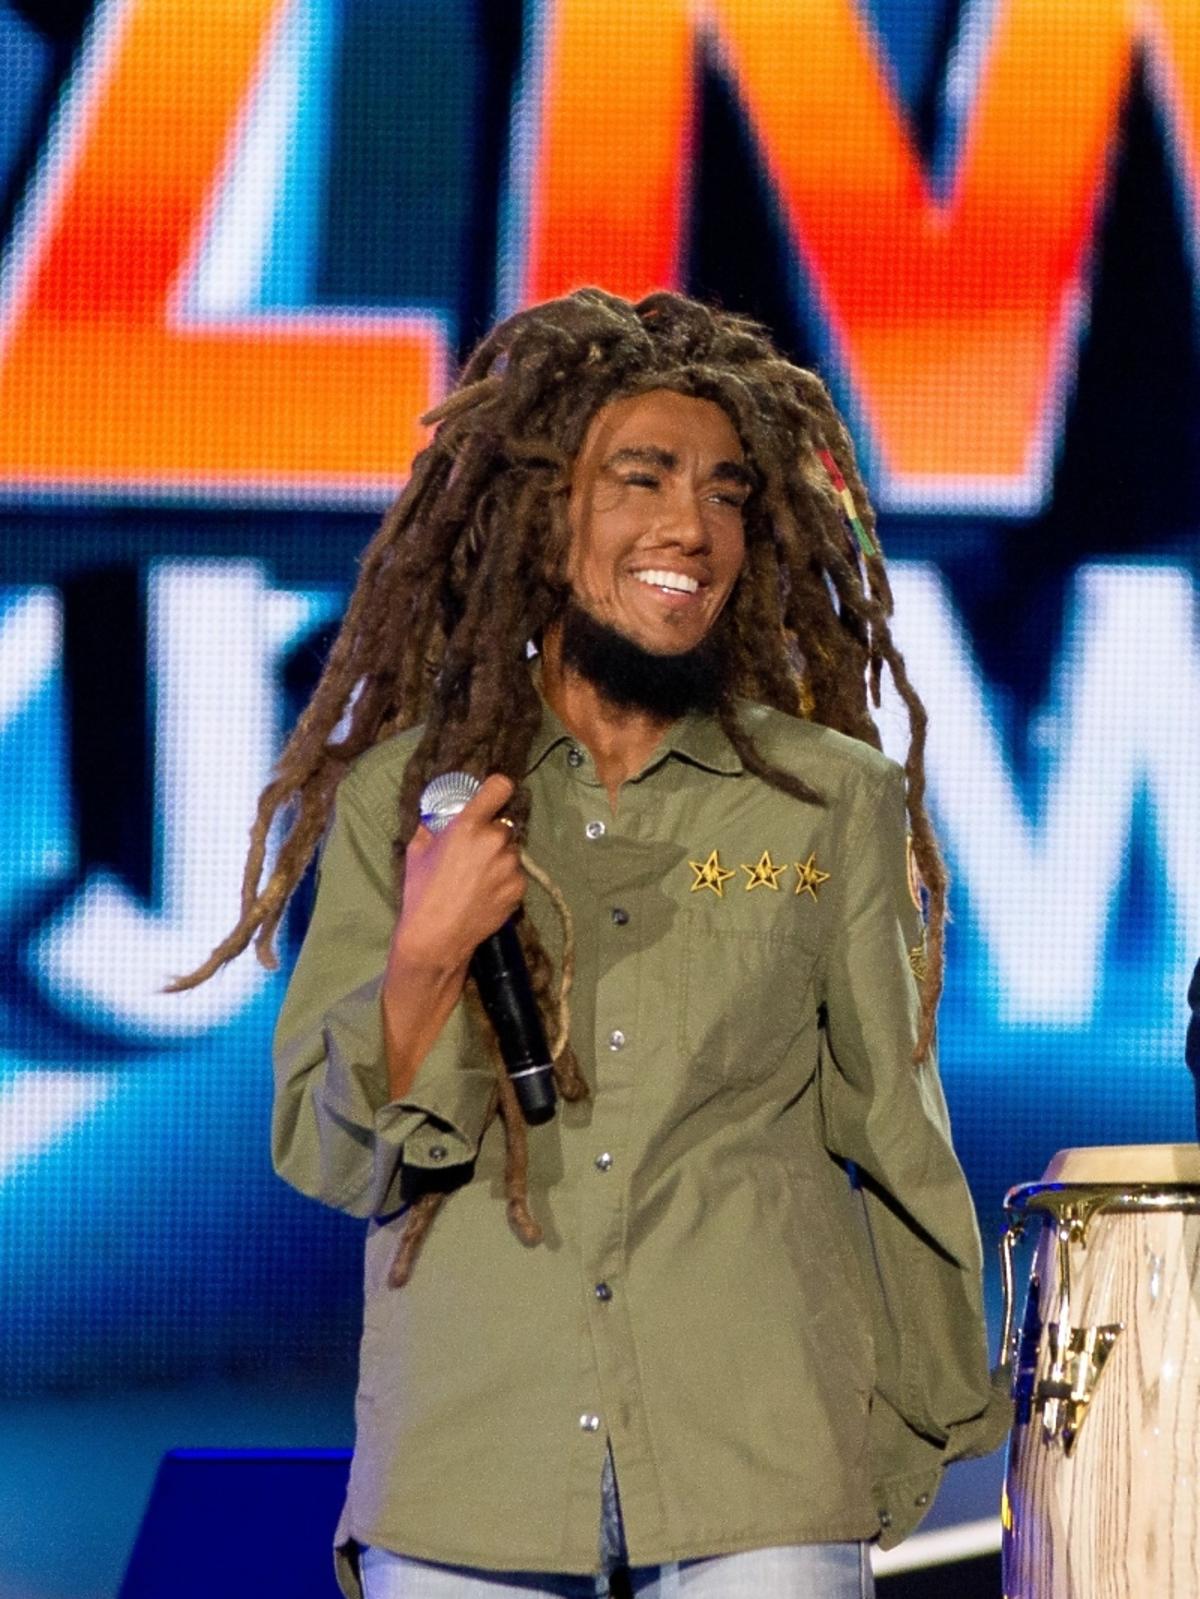 Paulla jako Bob Marley w Twoja twarz brzmi znajomo